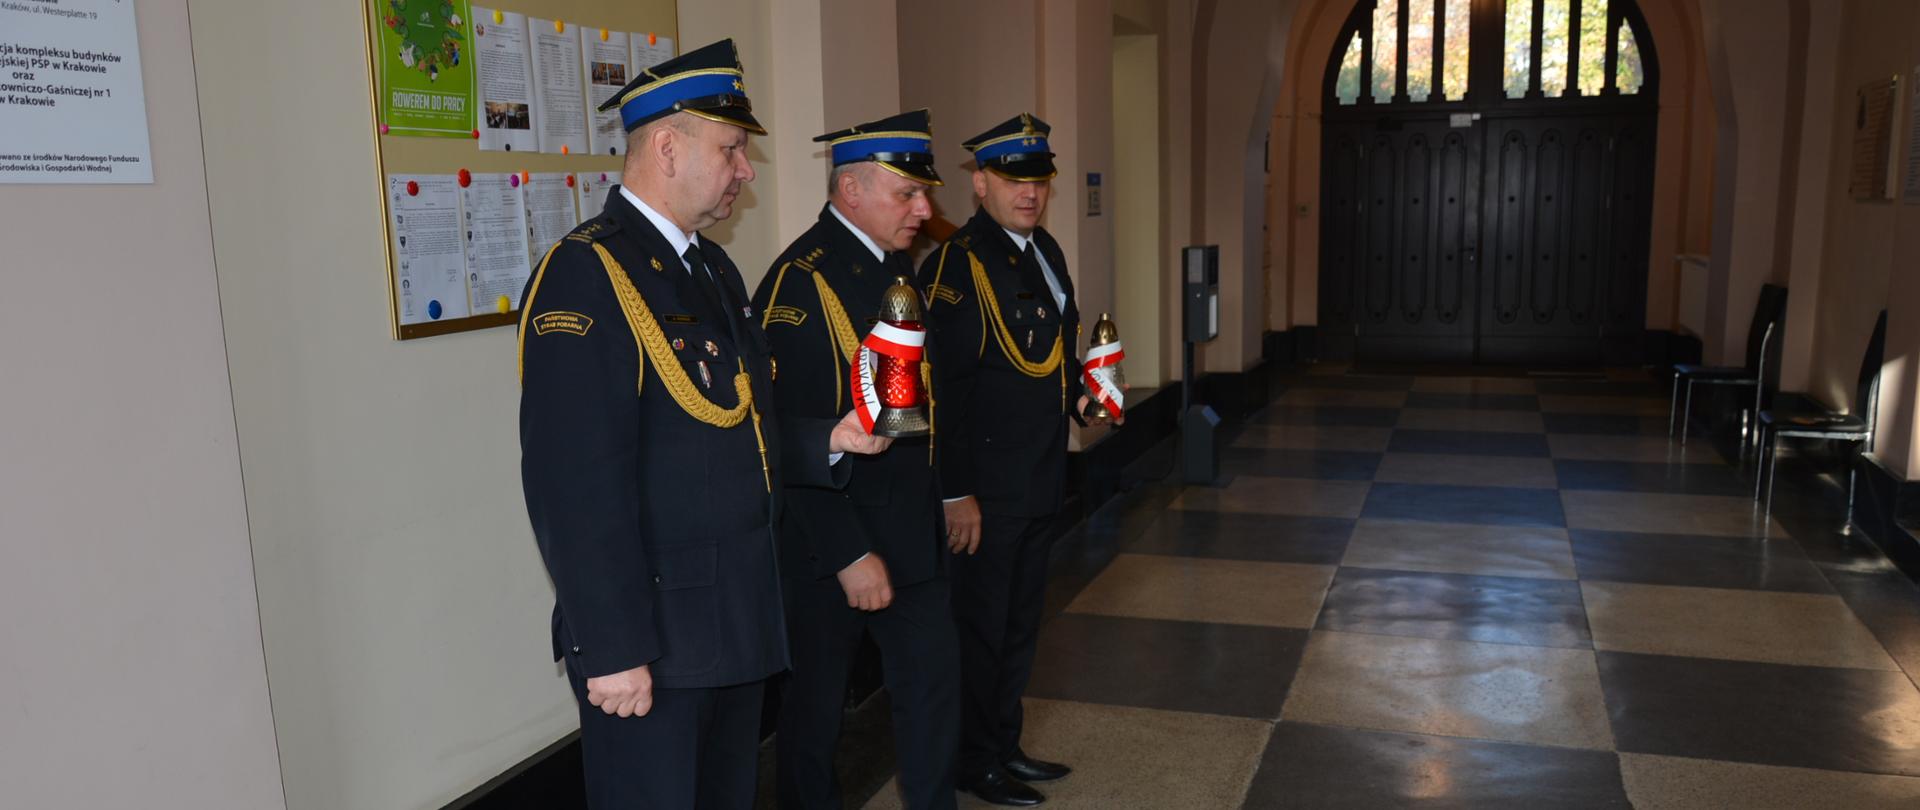 Kierownictwo KM PSP w Krakowie wspomina poległych i zmarłych strażaków.